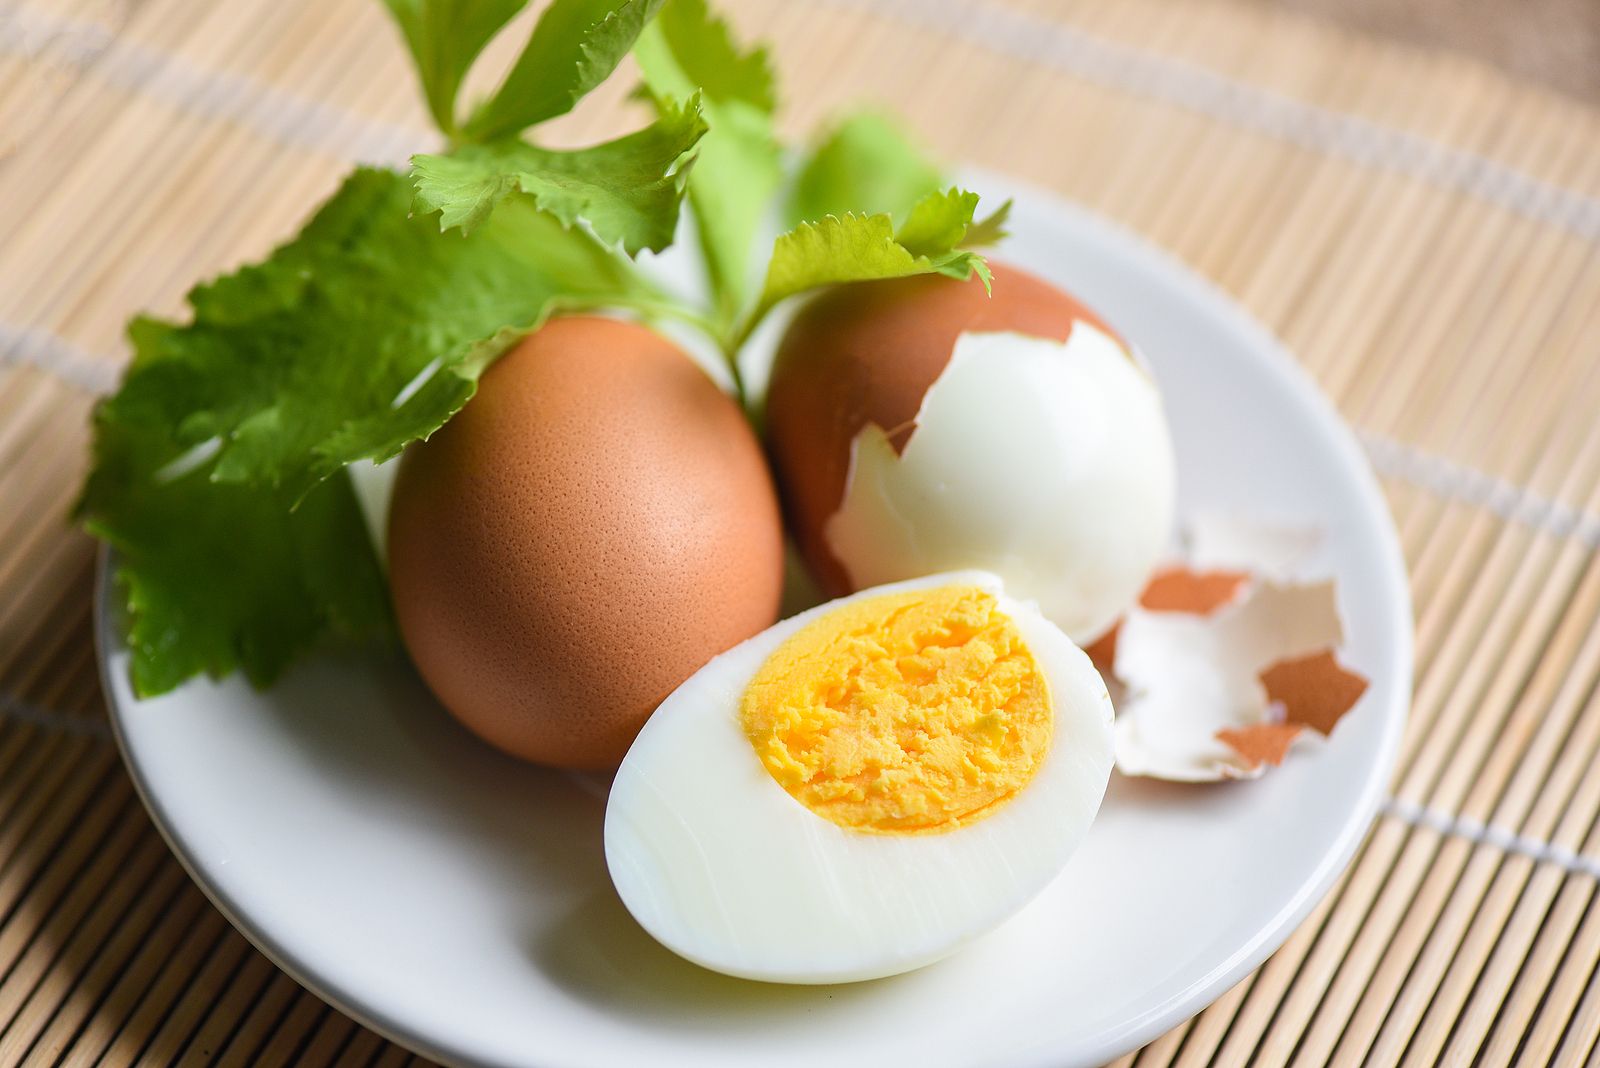 Los huevos, el 'remedio' contra las enfermedades cardiovasculares